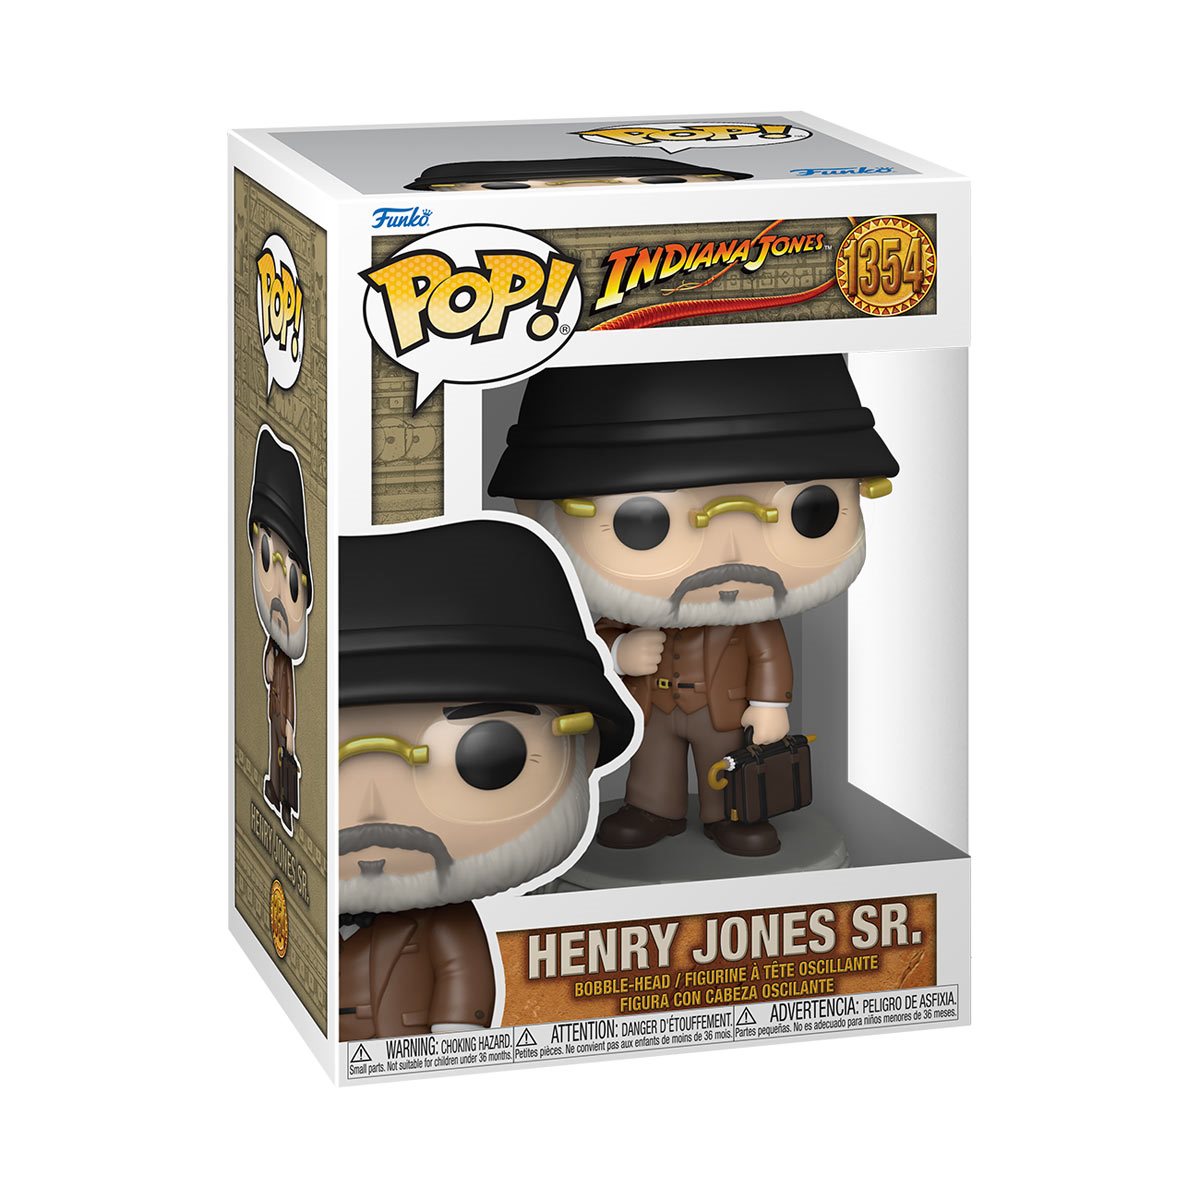 Indiana Jones and the Last Crusade Henry Jones Sr. Pop! Vinyl Figure #1354